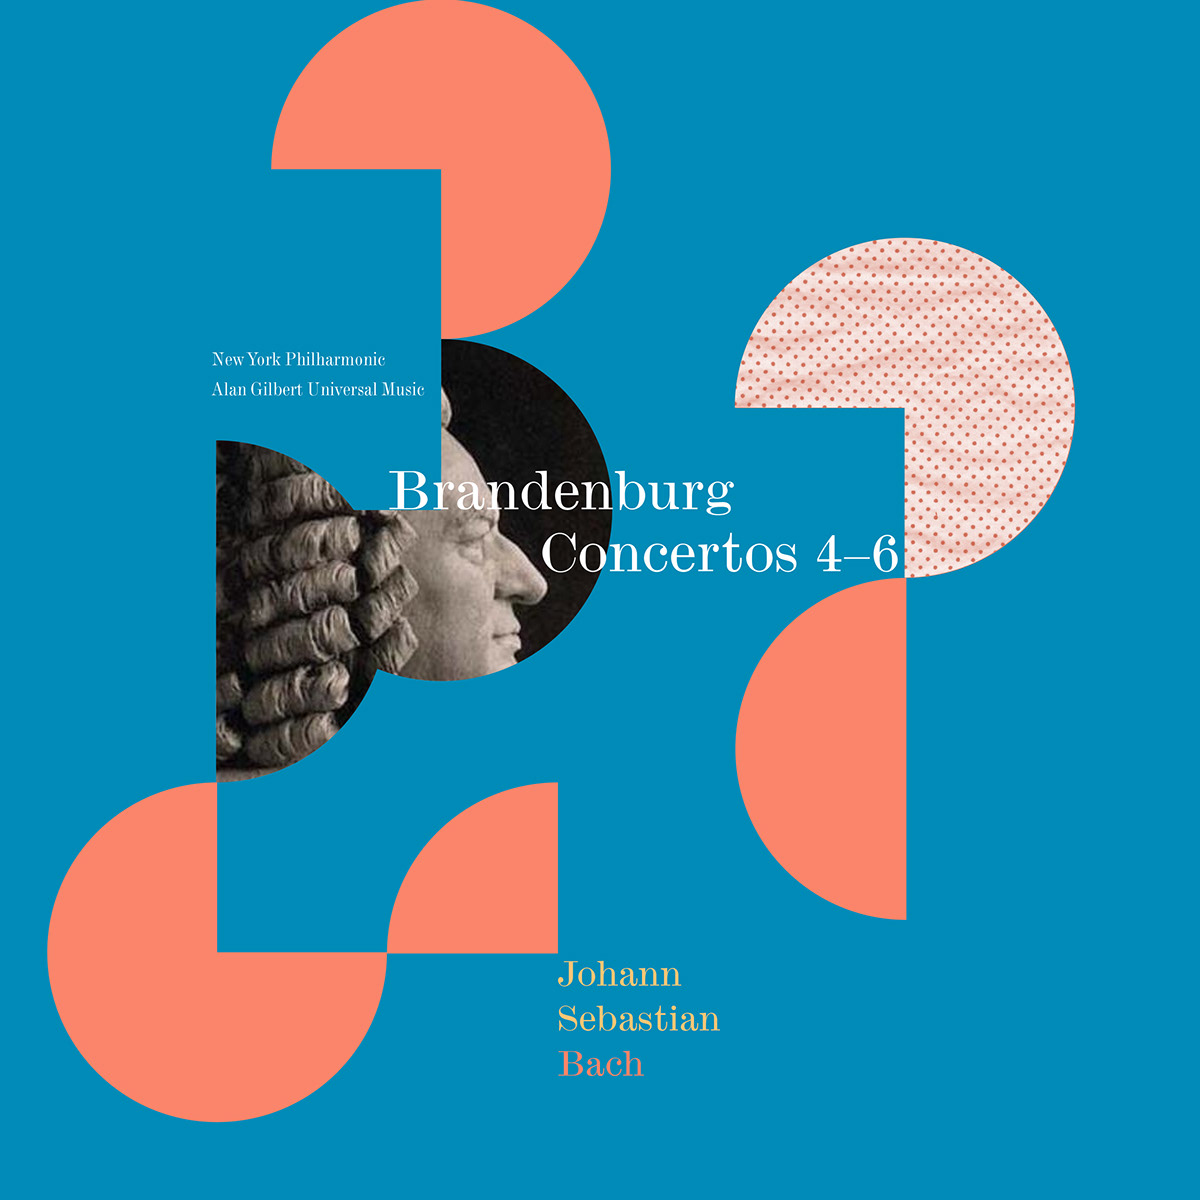 Brandenburg concertos Album cover design johann sebastion bach Classical color print SAIC